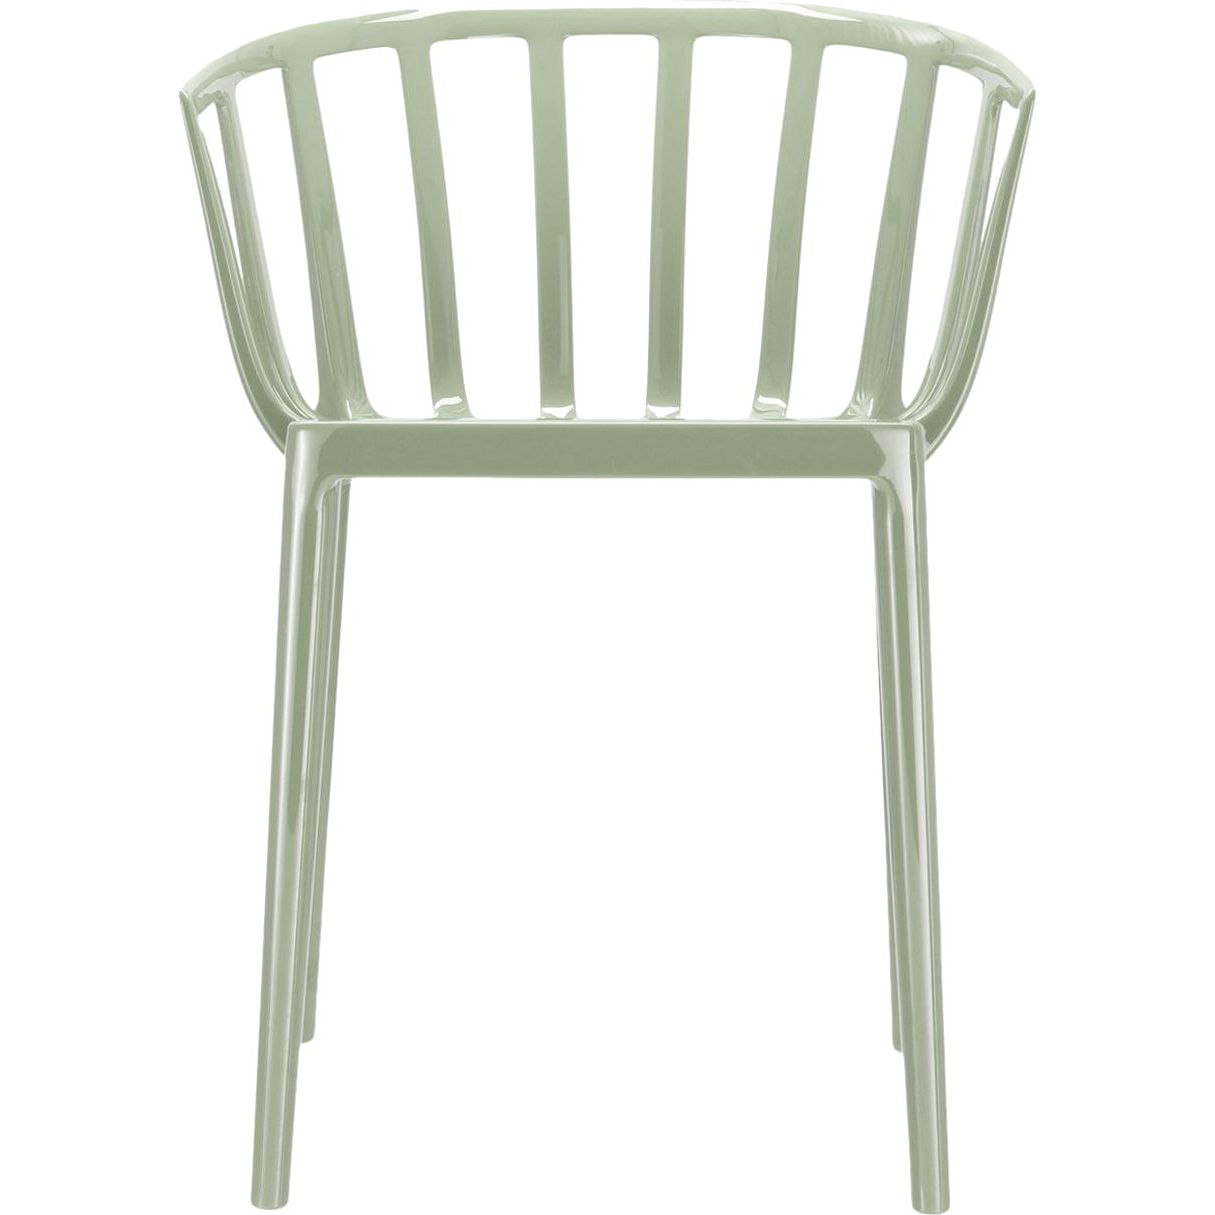 Venice Chair